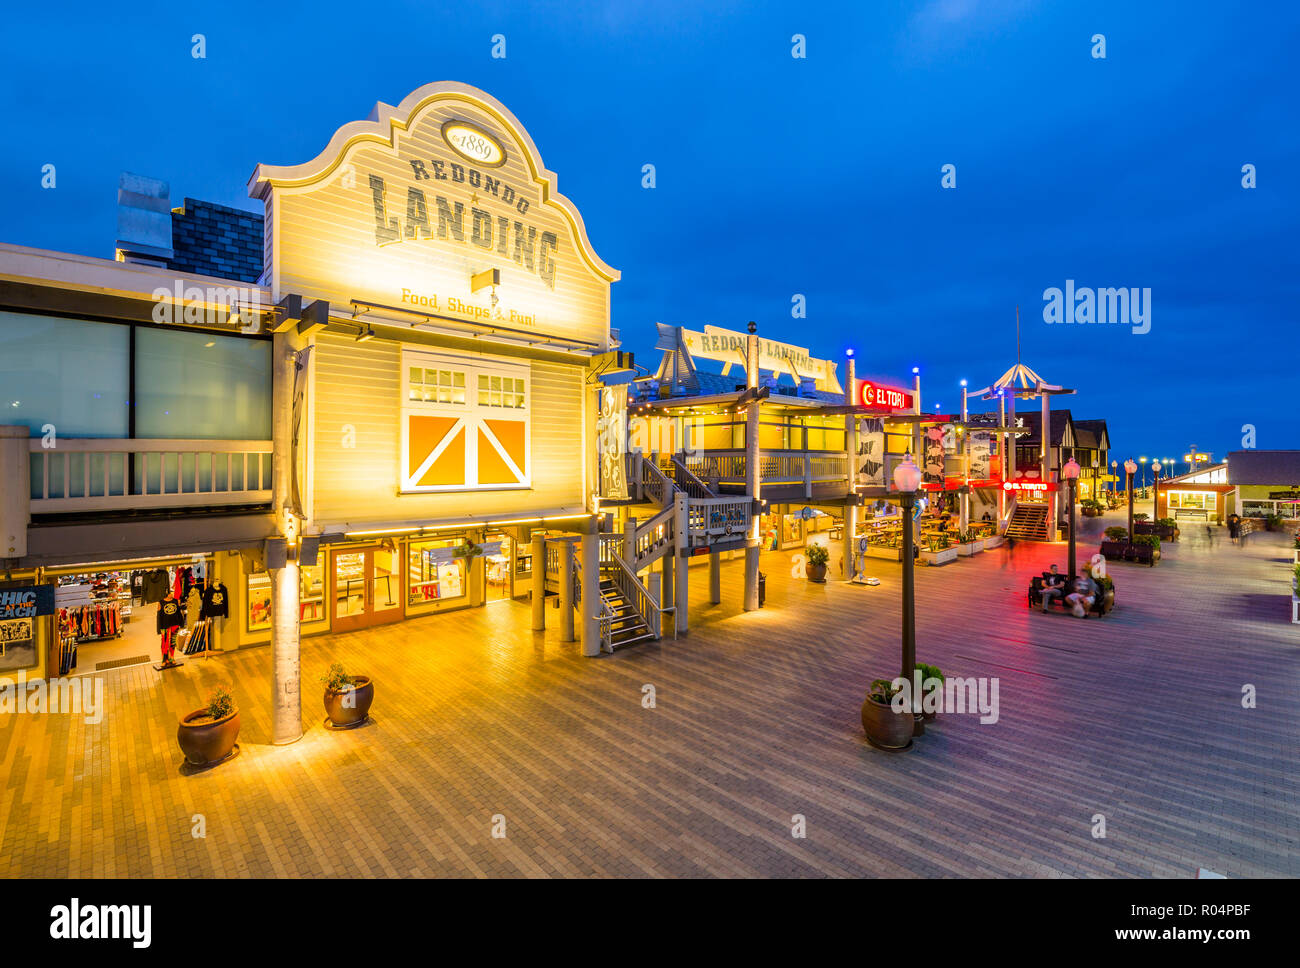 Vue sur mer Redondo pier au crépuscule, Los Angeles, Californie, États-Unis d'Amérique, Amérique du Nord Banque D'Images